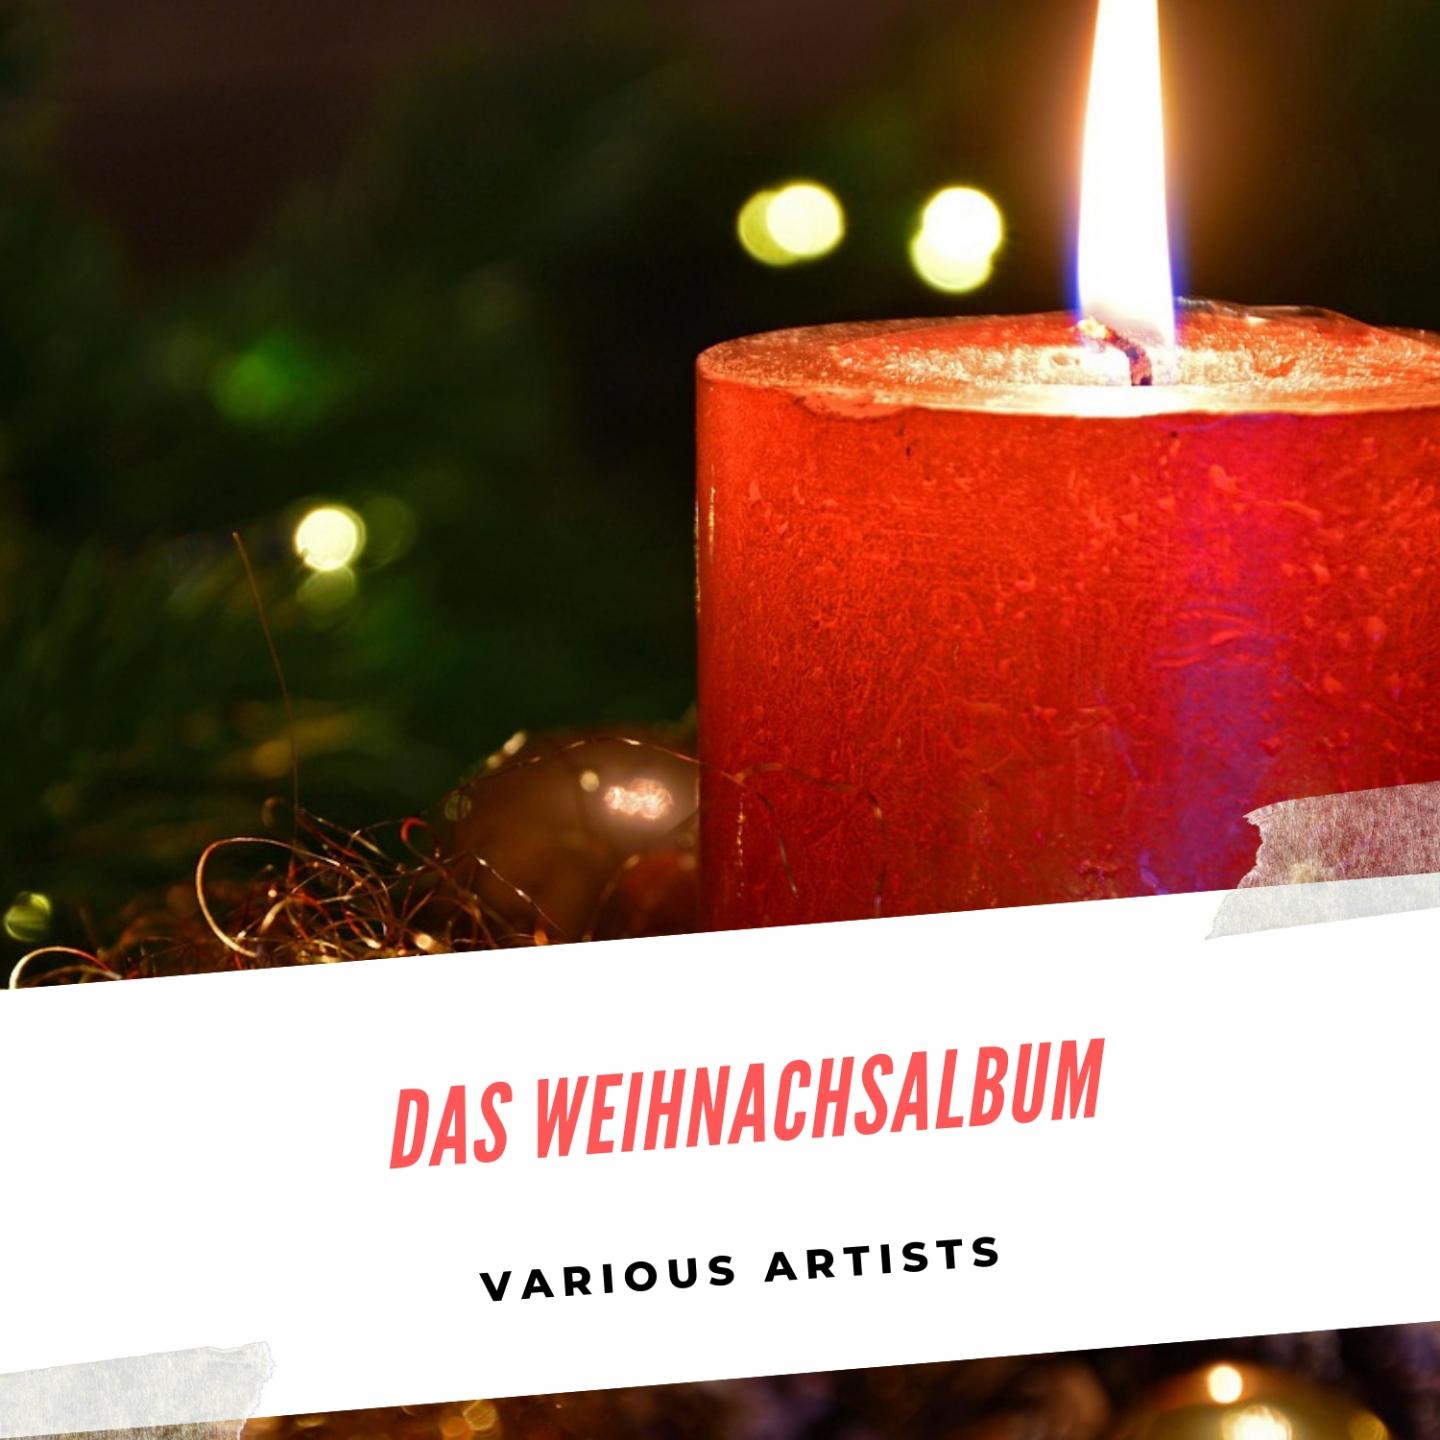 Christmas Oratorio, Bwv 248 Pt. 1: Nun Wird Mein Liebster Br utigam